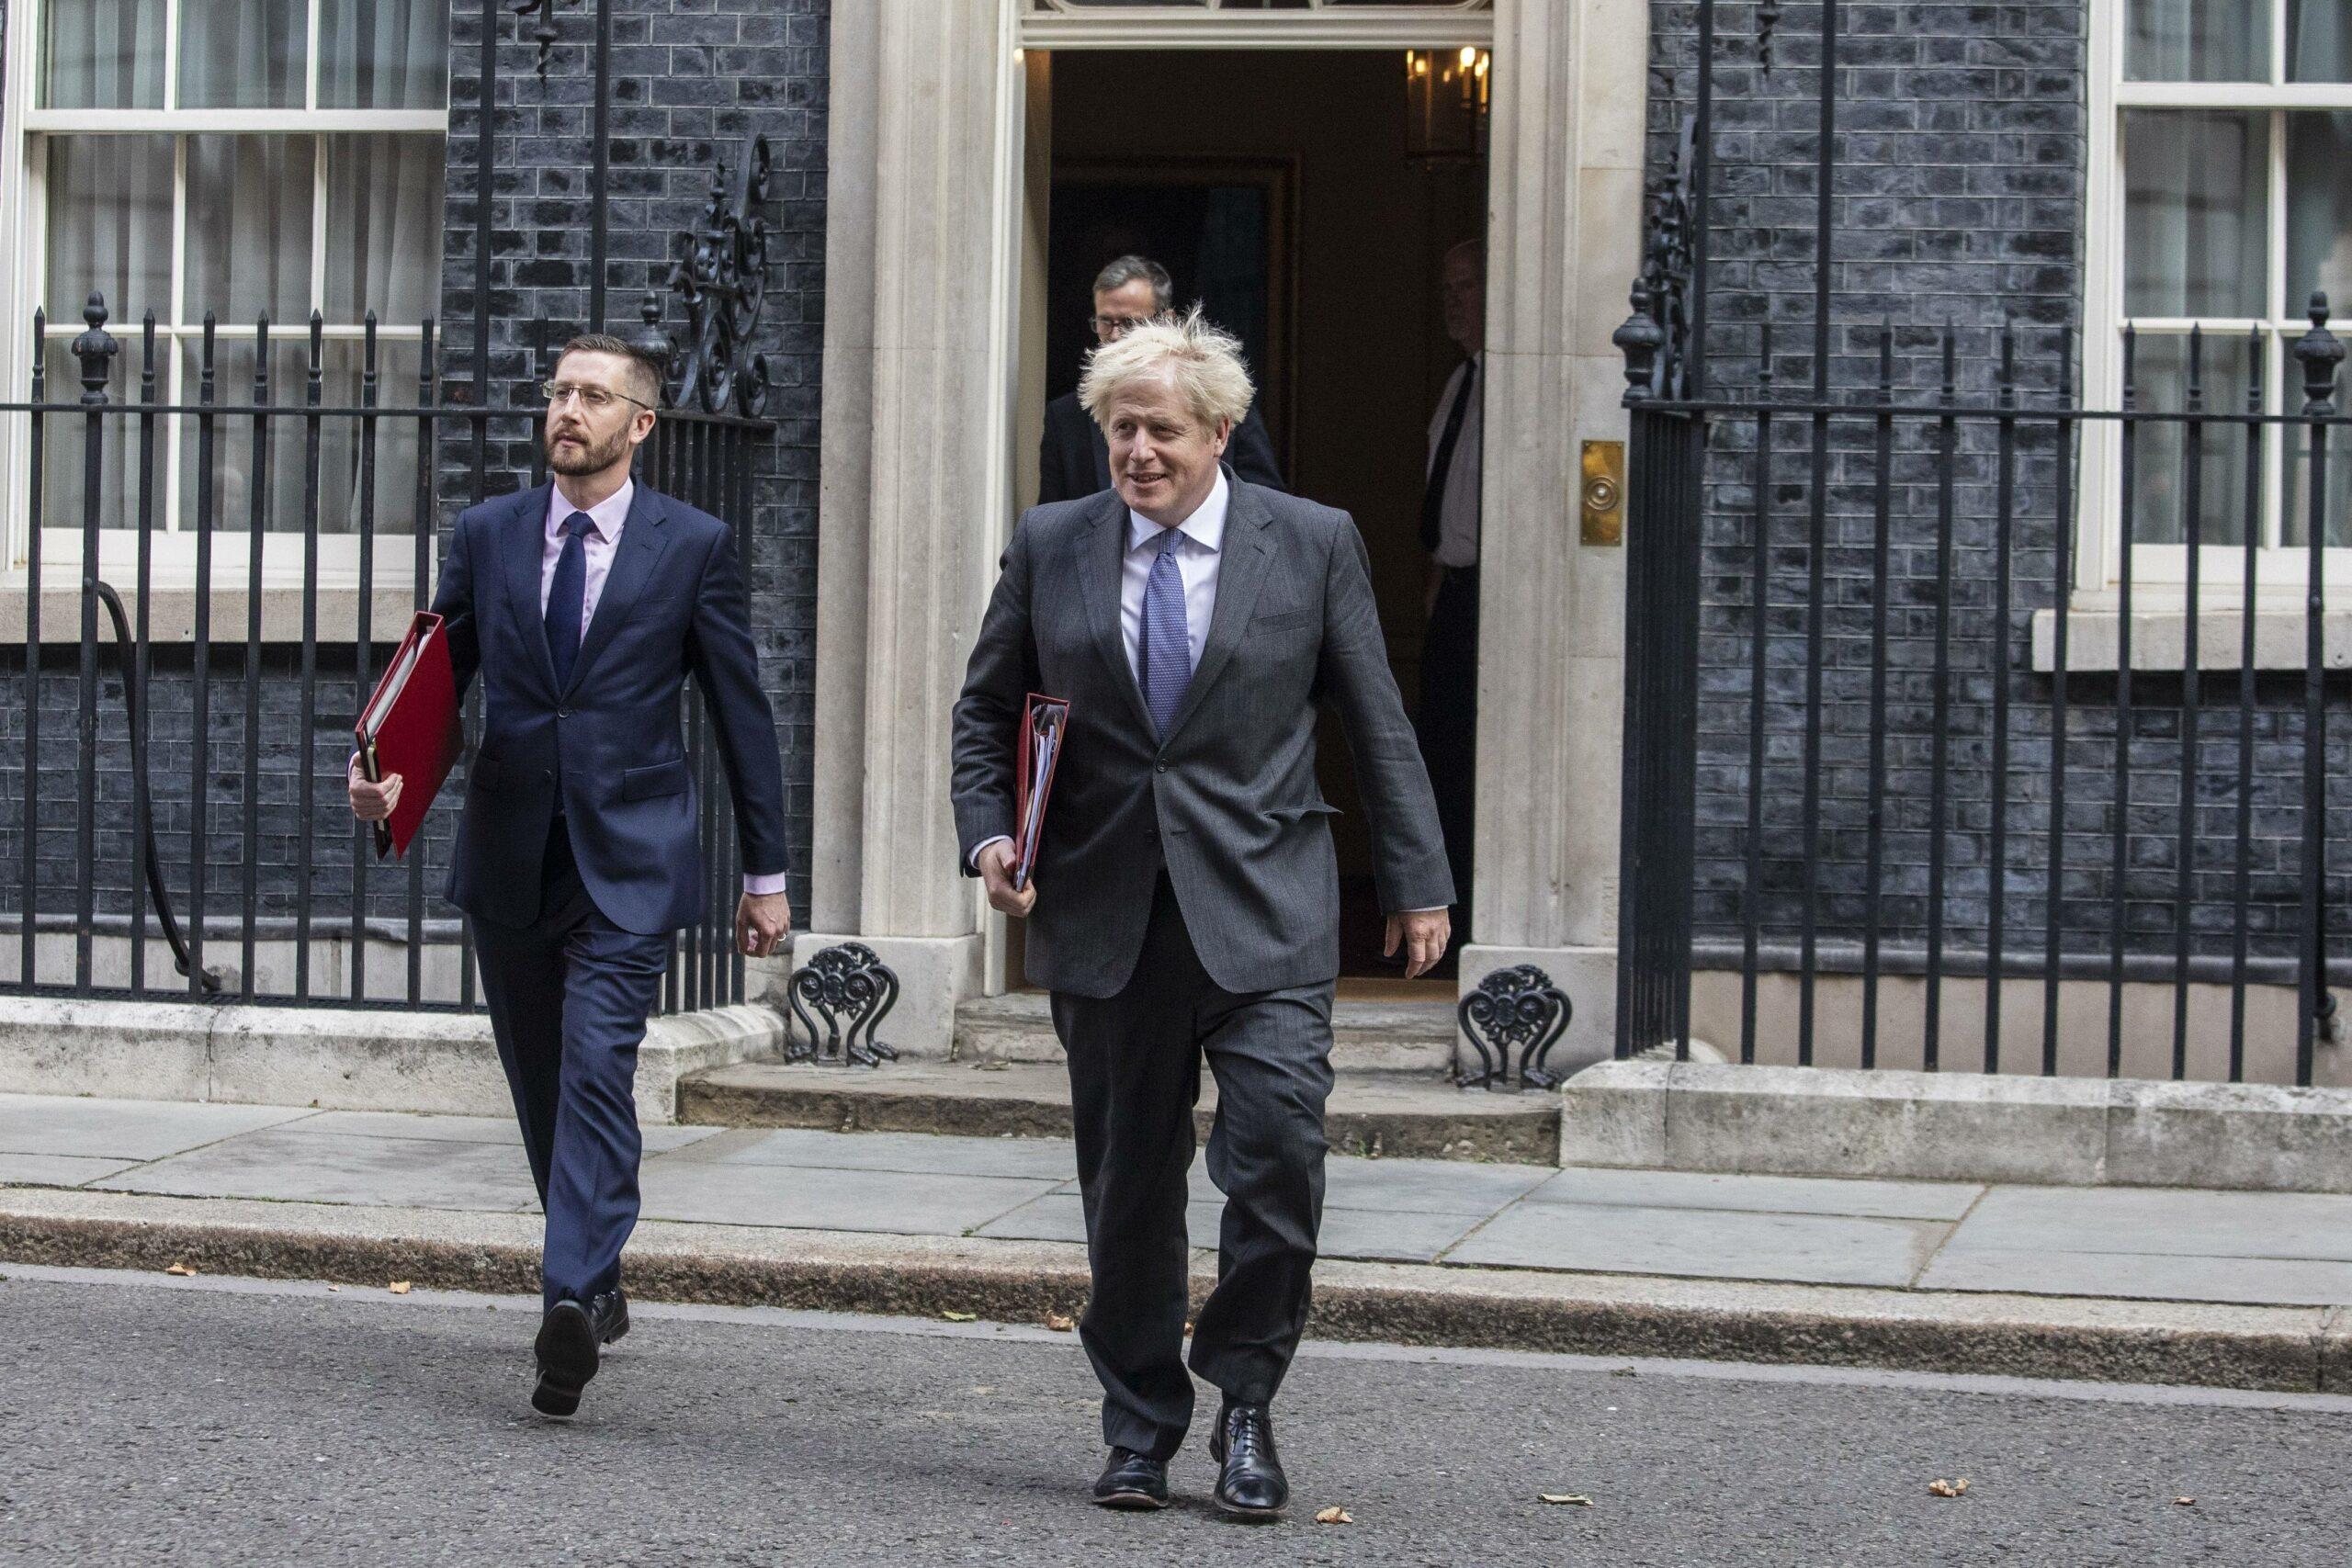 PM Boris Johnson and Cabinet secretary Simon Case